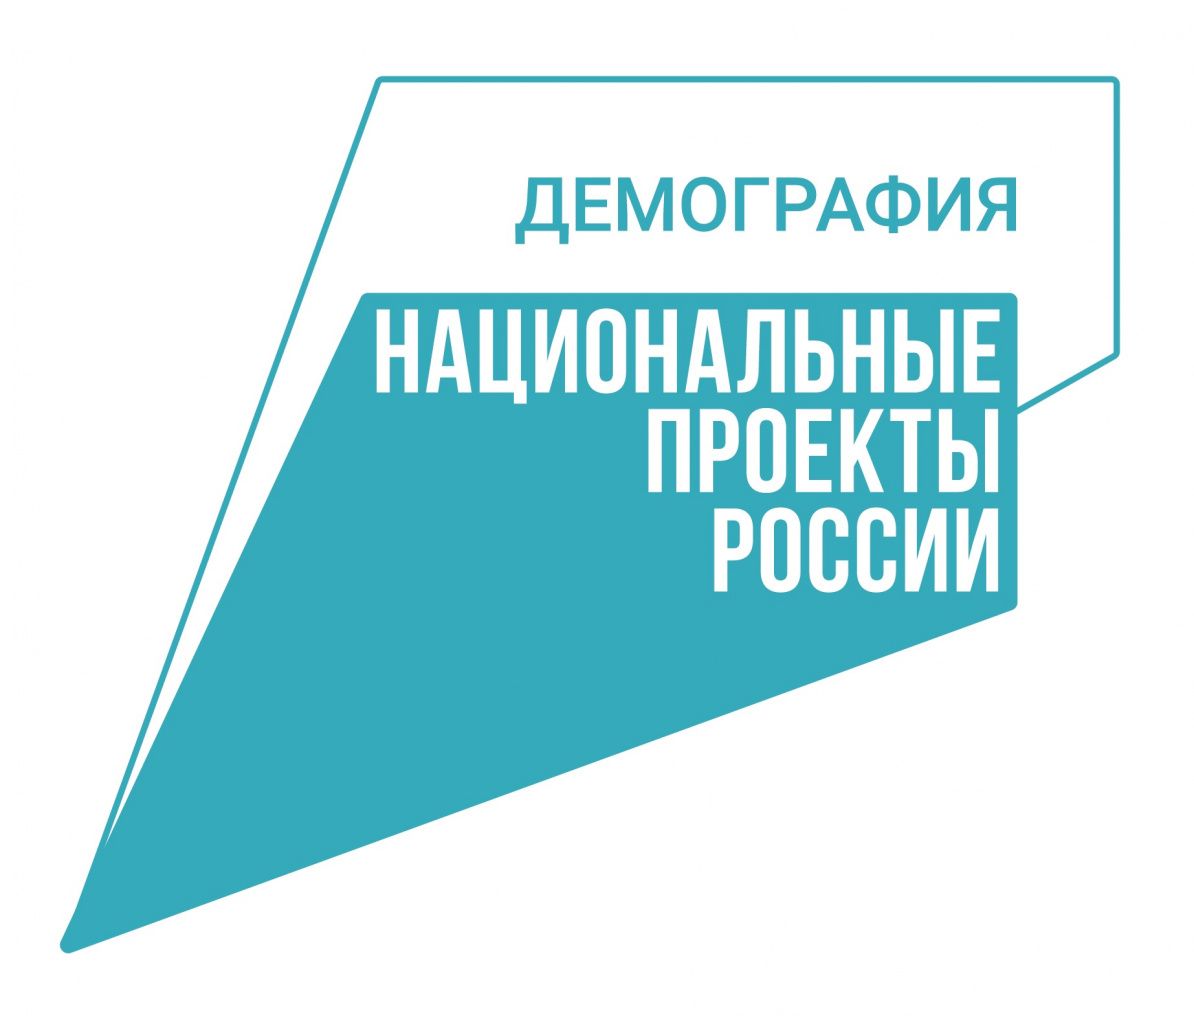 В ходе тематической недели нацпроекта «Демография» в Ульяновской области пройдёт порядка 500 мероприятий